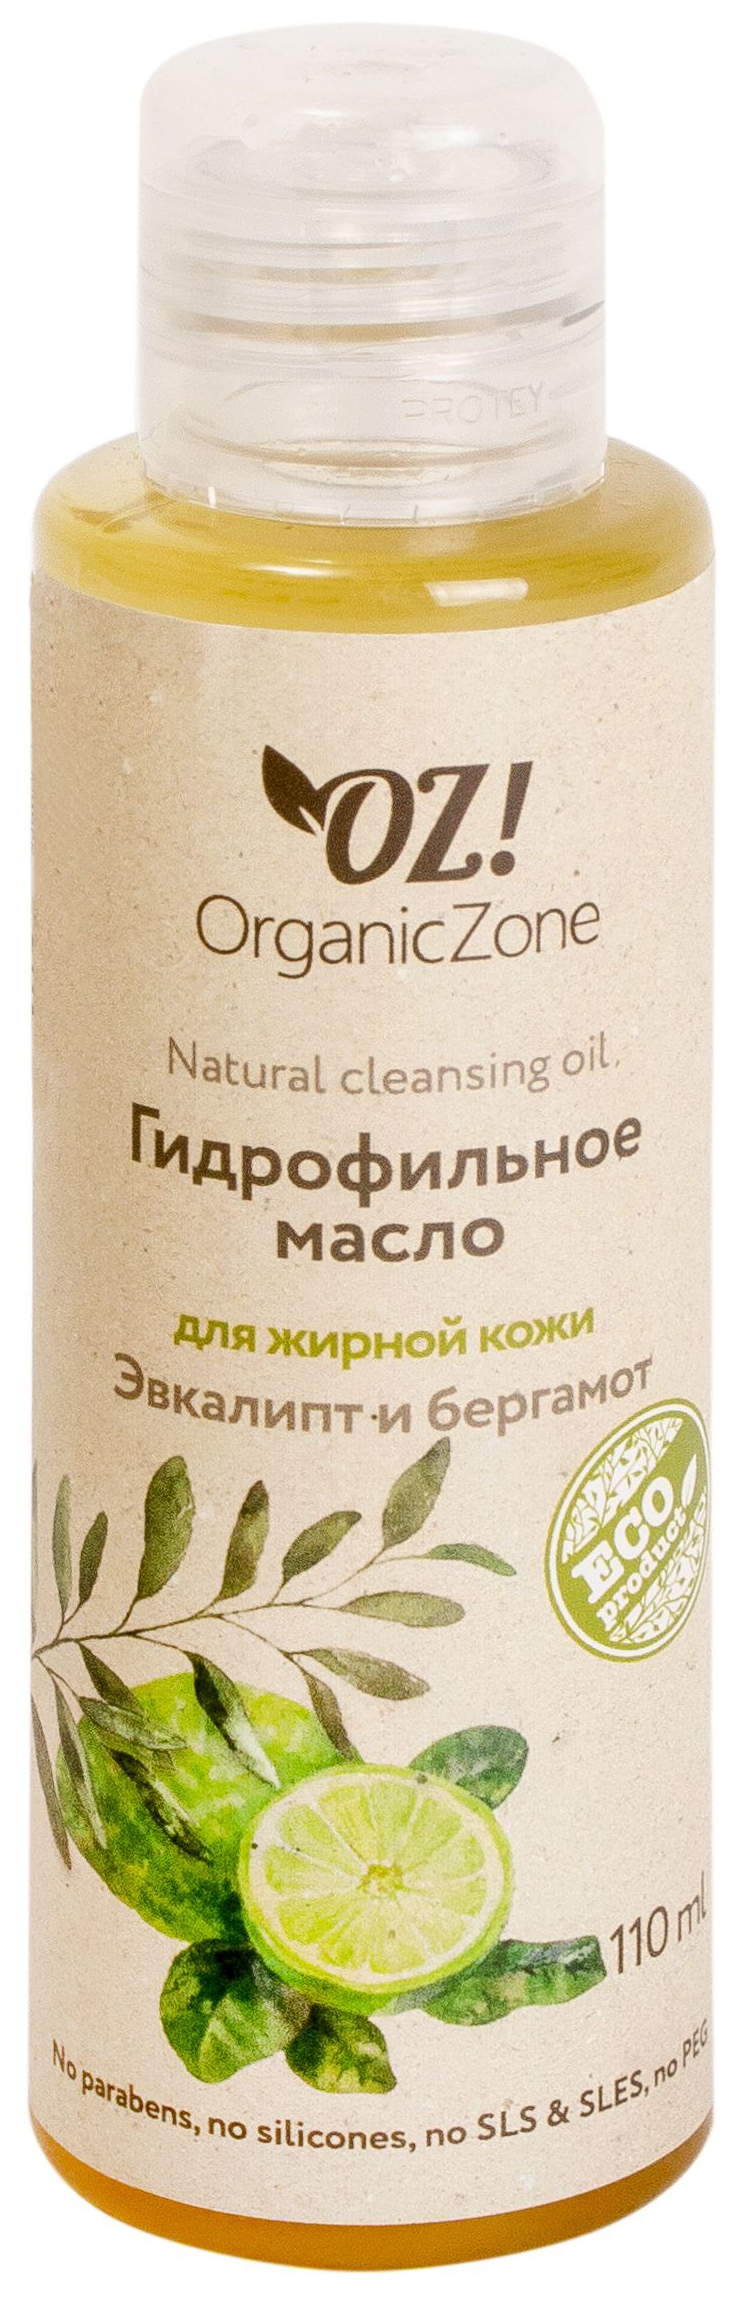 Купить Масло для лица OrganicZone Эвкалипт и бергамот 110 мл, Organic Zone